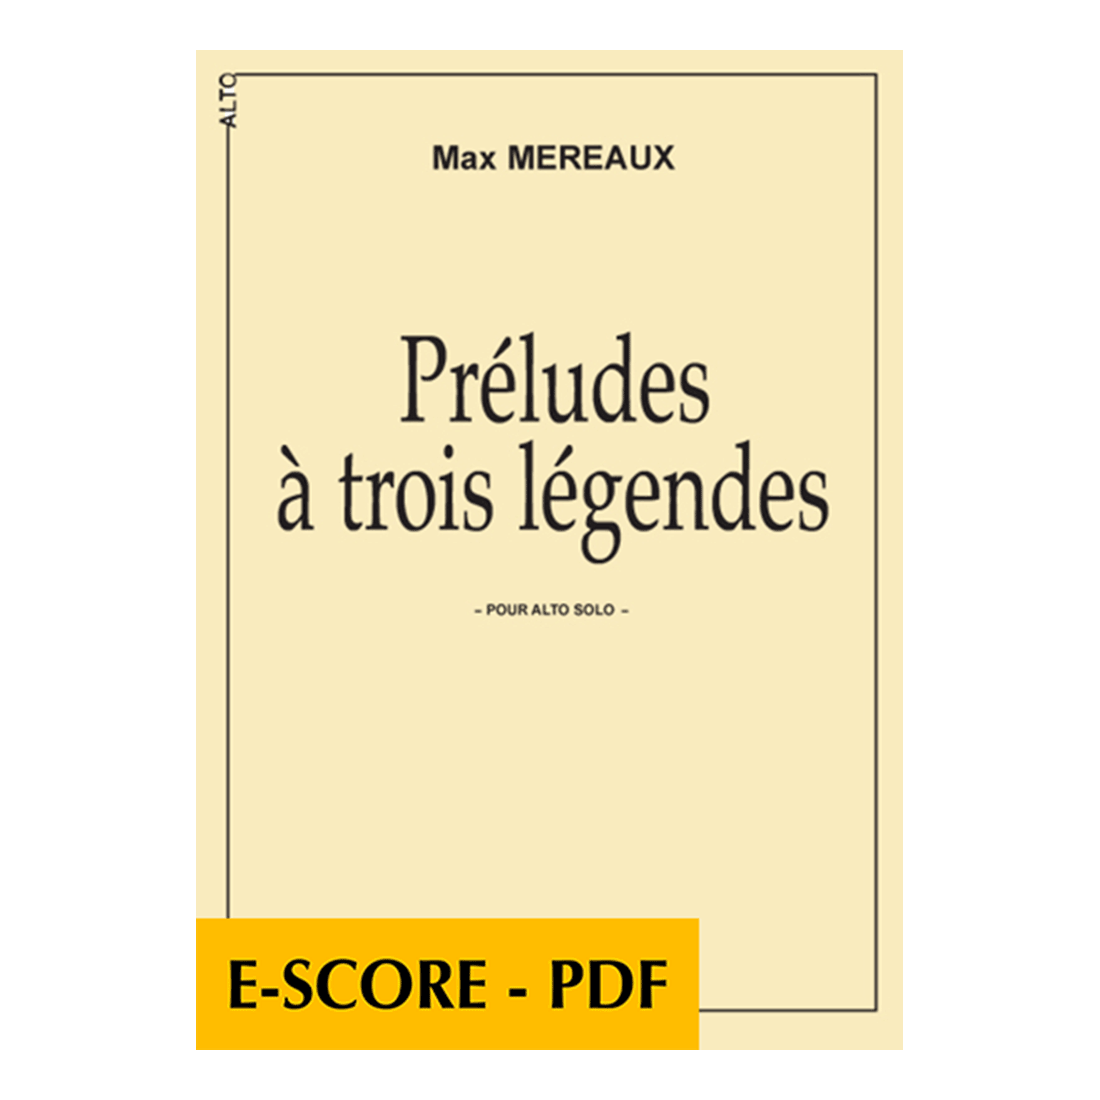 Préludes à trois légendes für Bratsche - E-score PDF